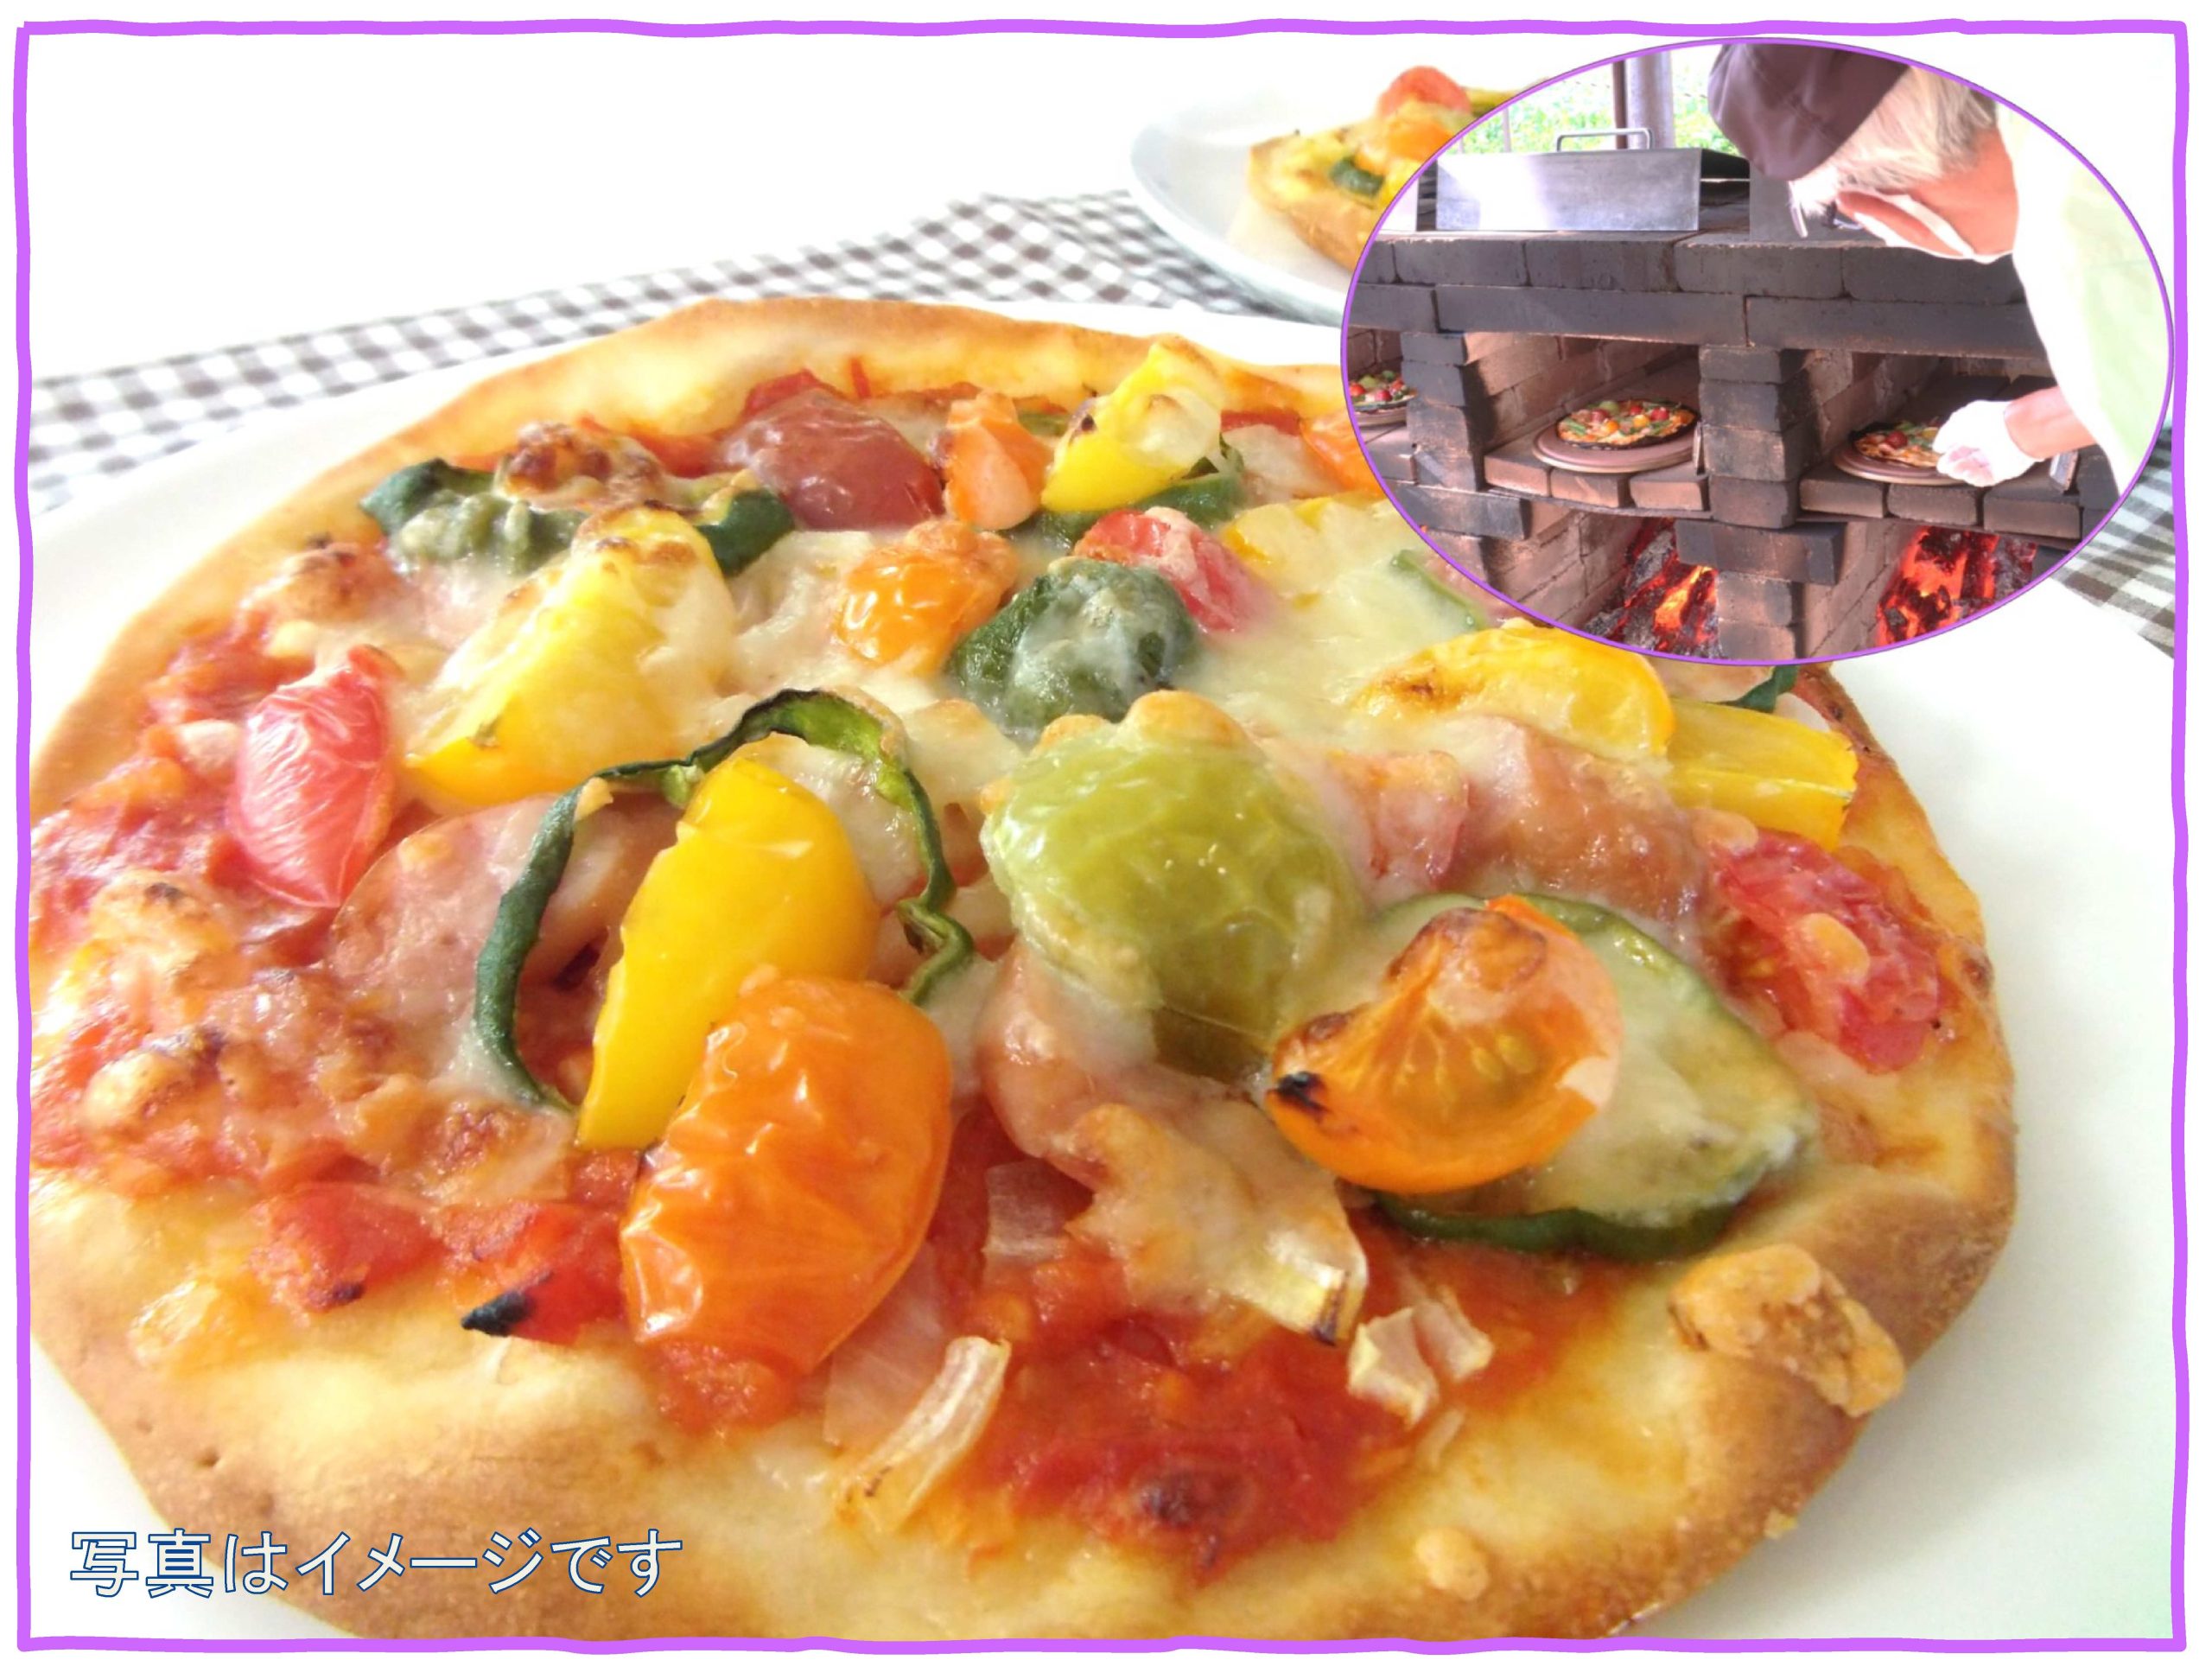 【JUNE FOOD FESTA】 旬野菜の窯焼きピザを作ろう